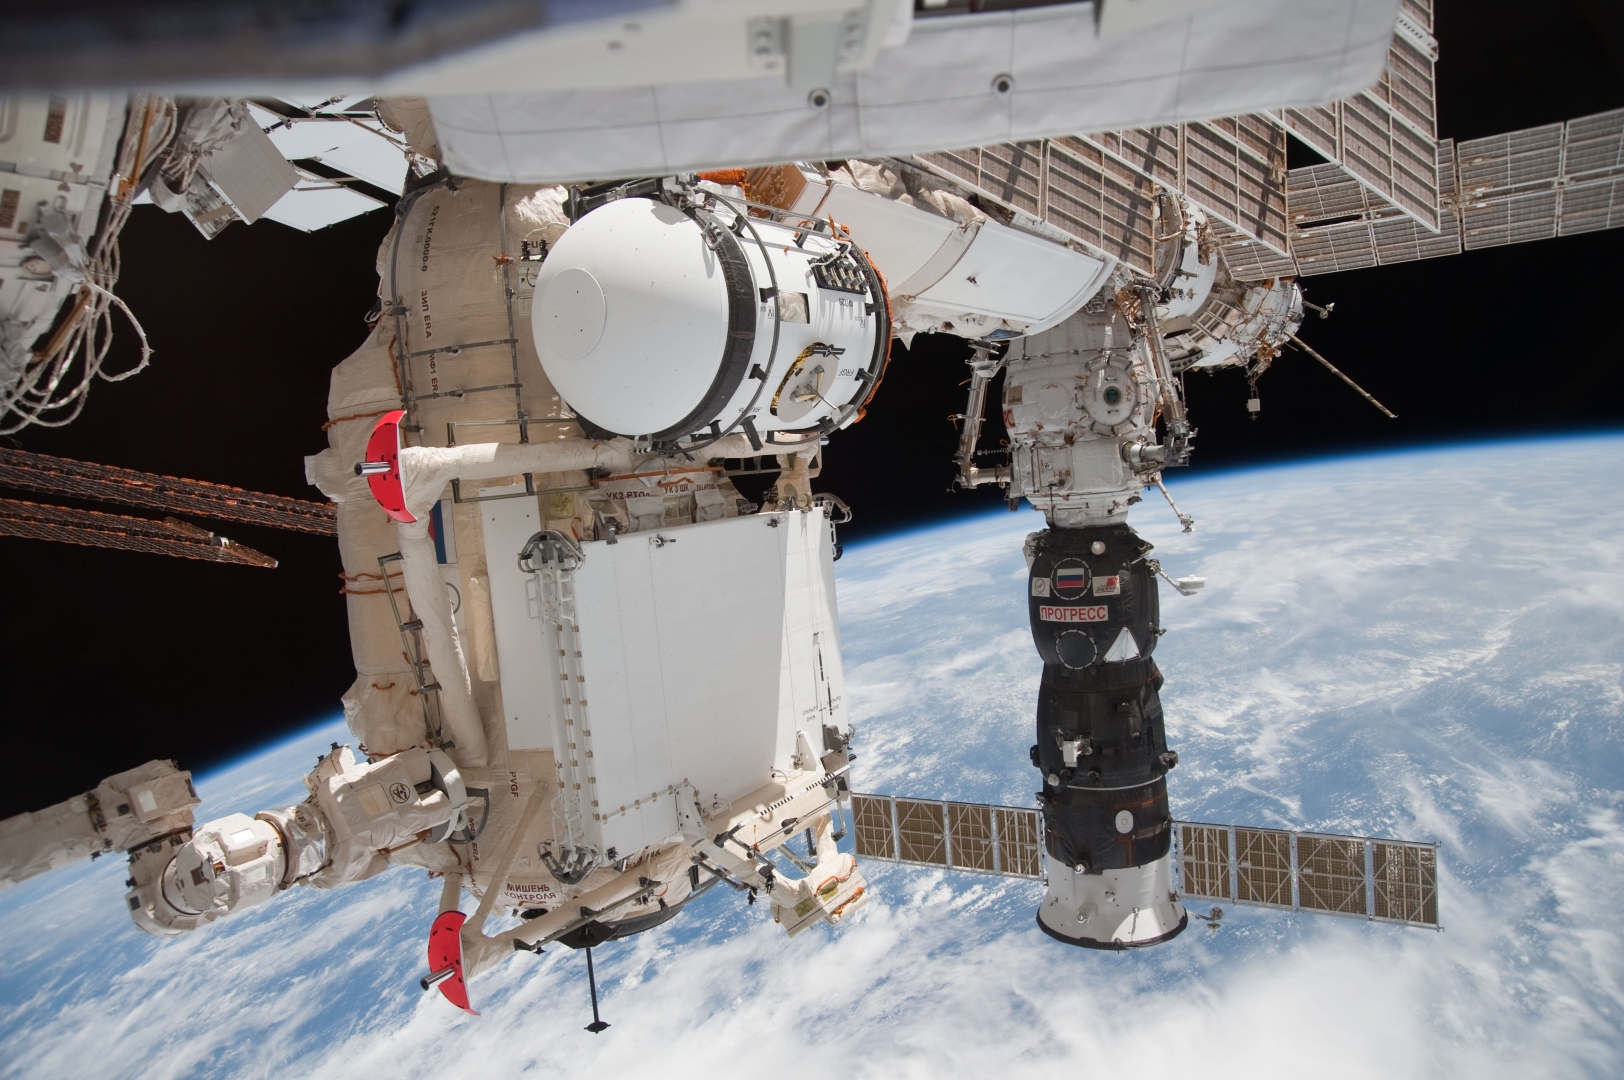 Продлены сроки изоляции экипажа МКС в российском сегменте станции